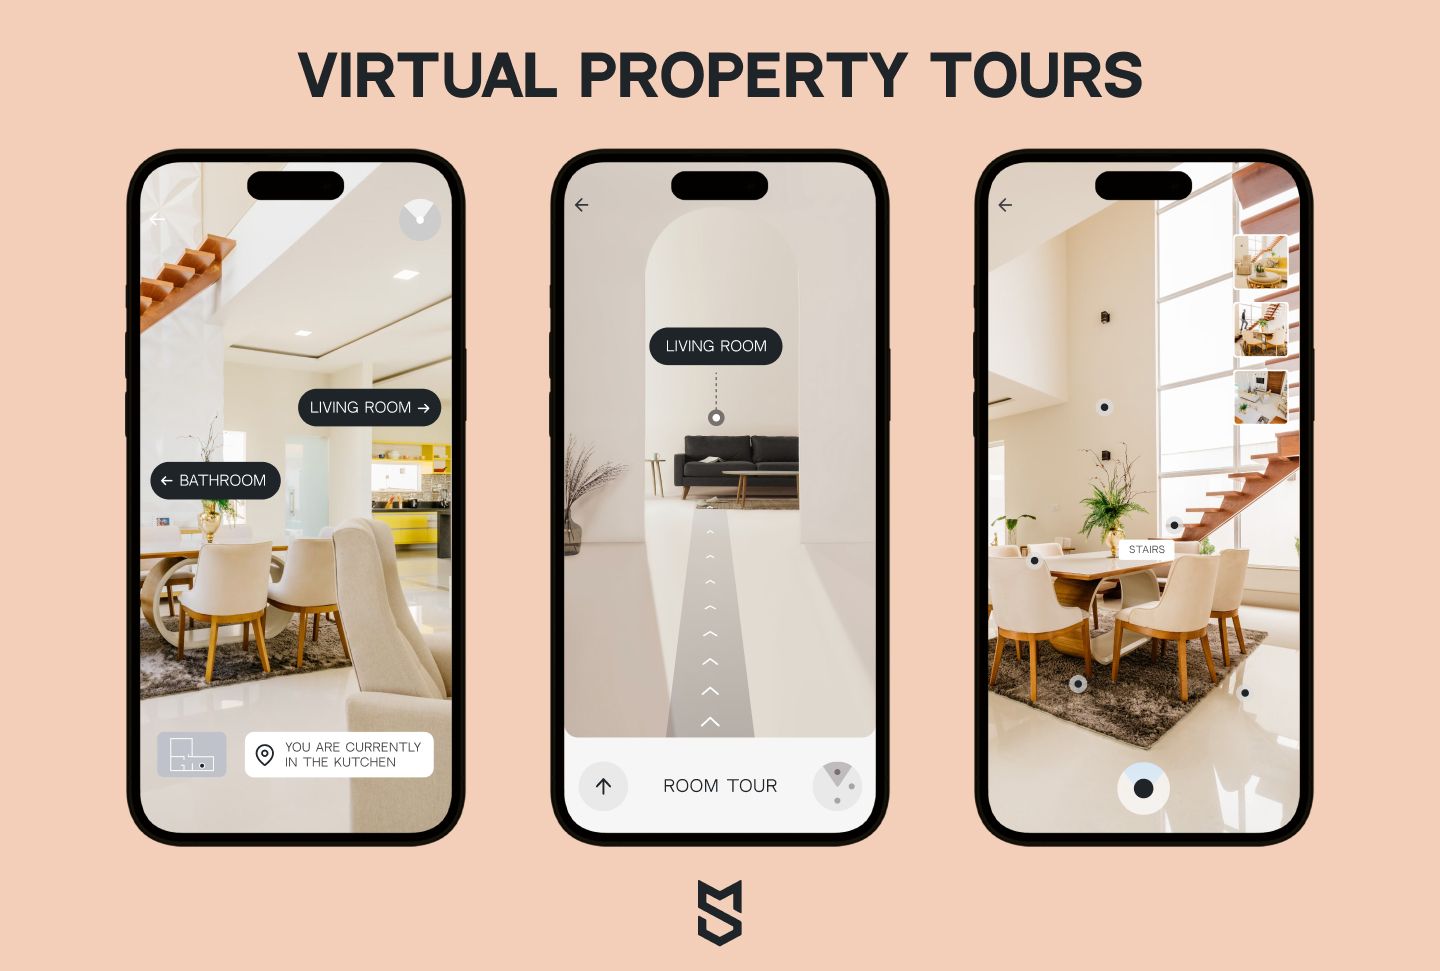 Virtual property tours